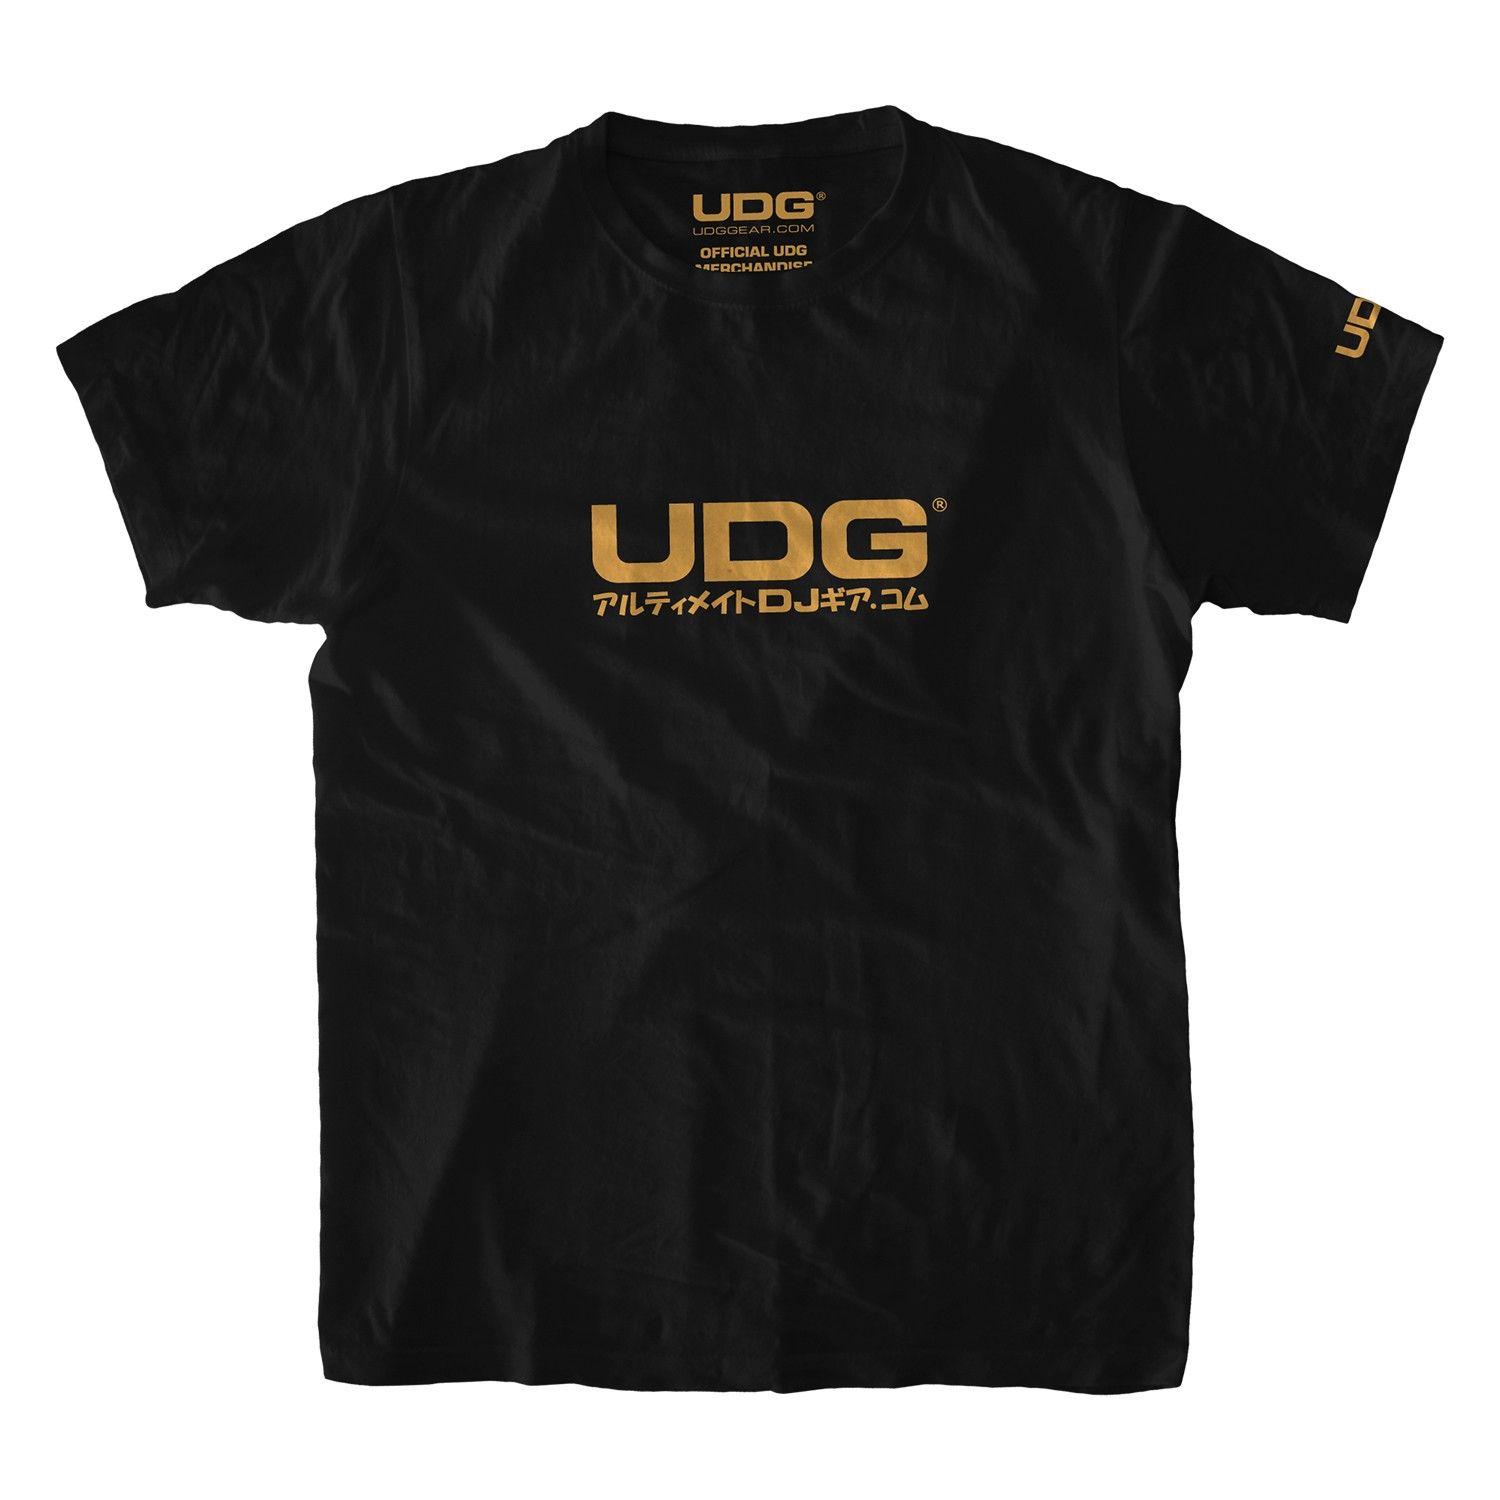 UDG Logo - UDG T Shirt Japanese Text Logo Black/ Gold. Ultimate DJ Gear